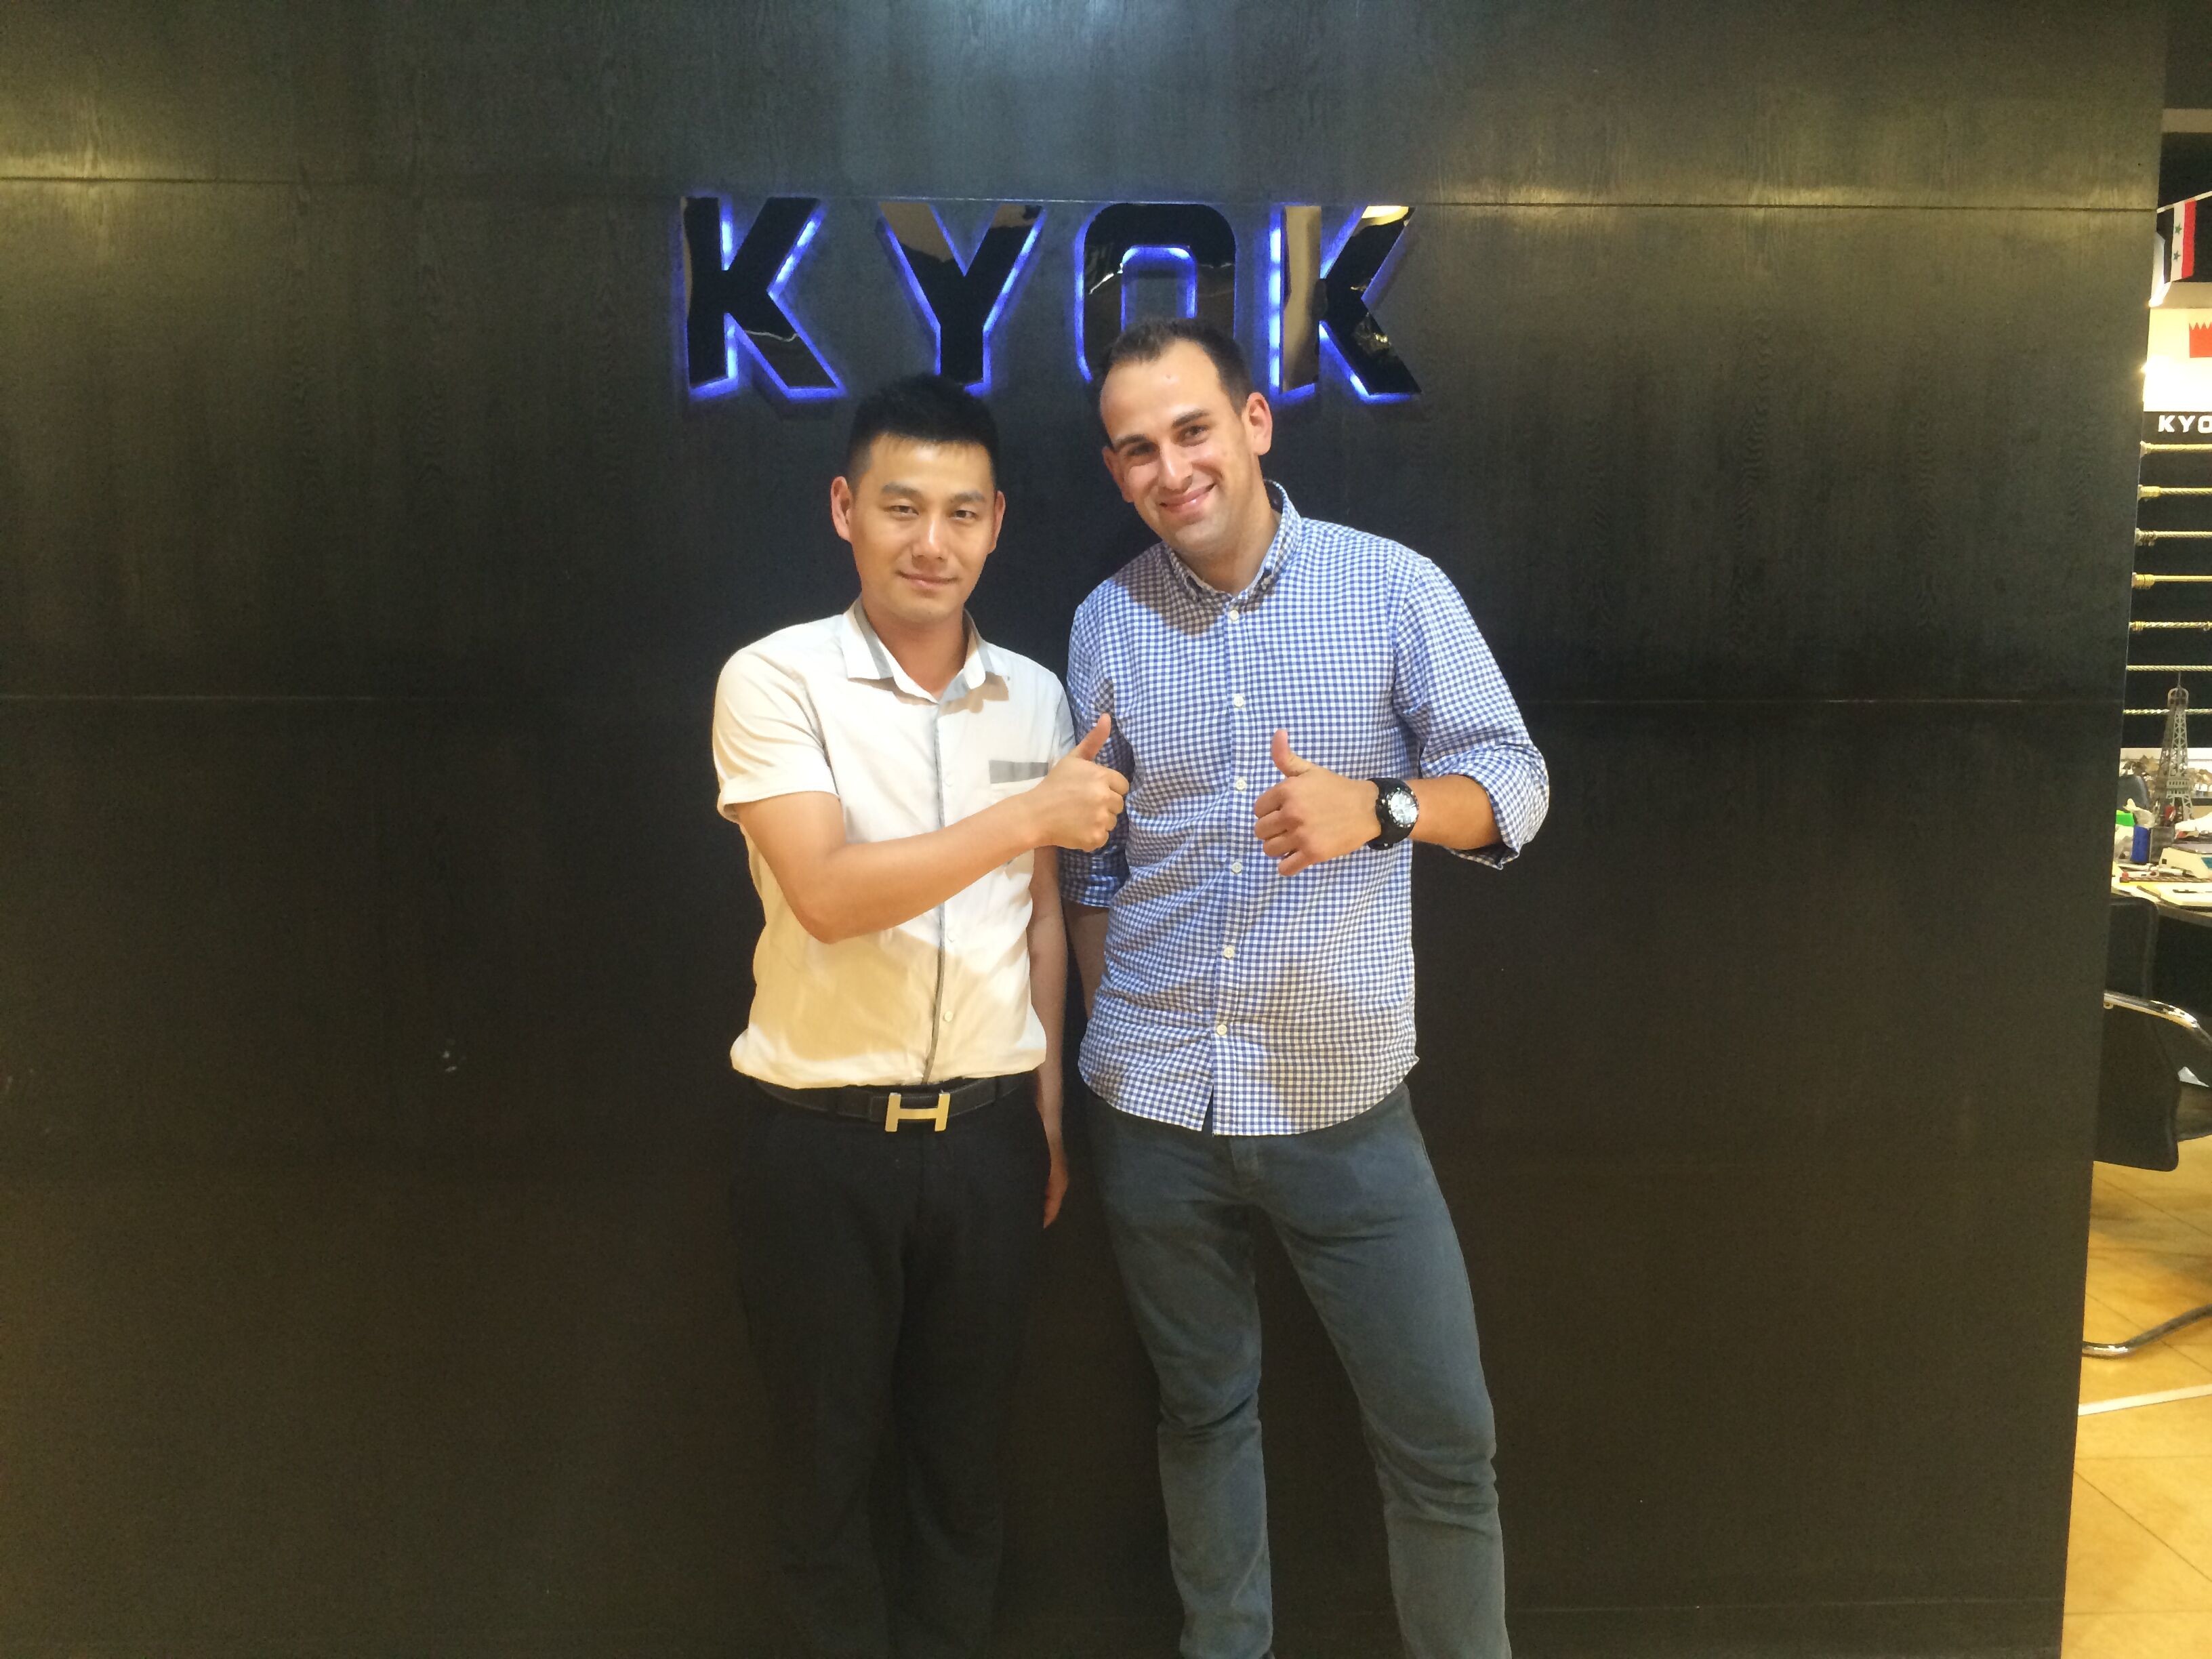 Laatste bedrijfscasus over Spaanse klant bezochte KYOK